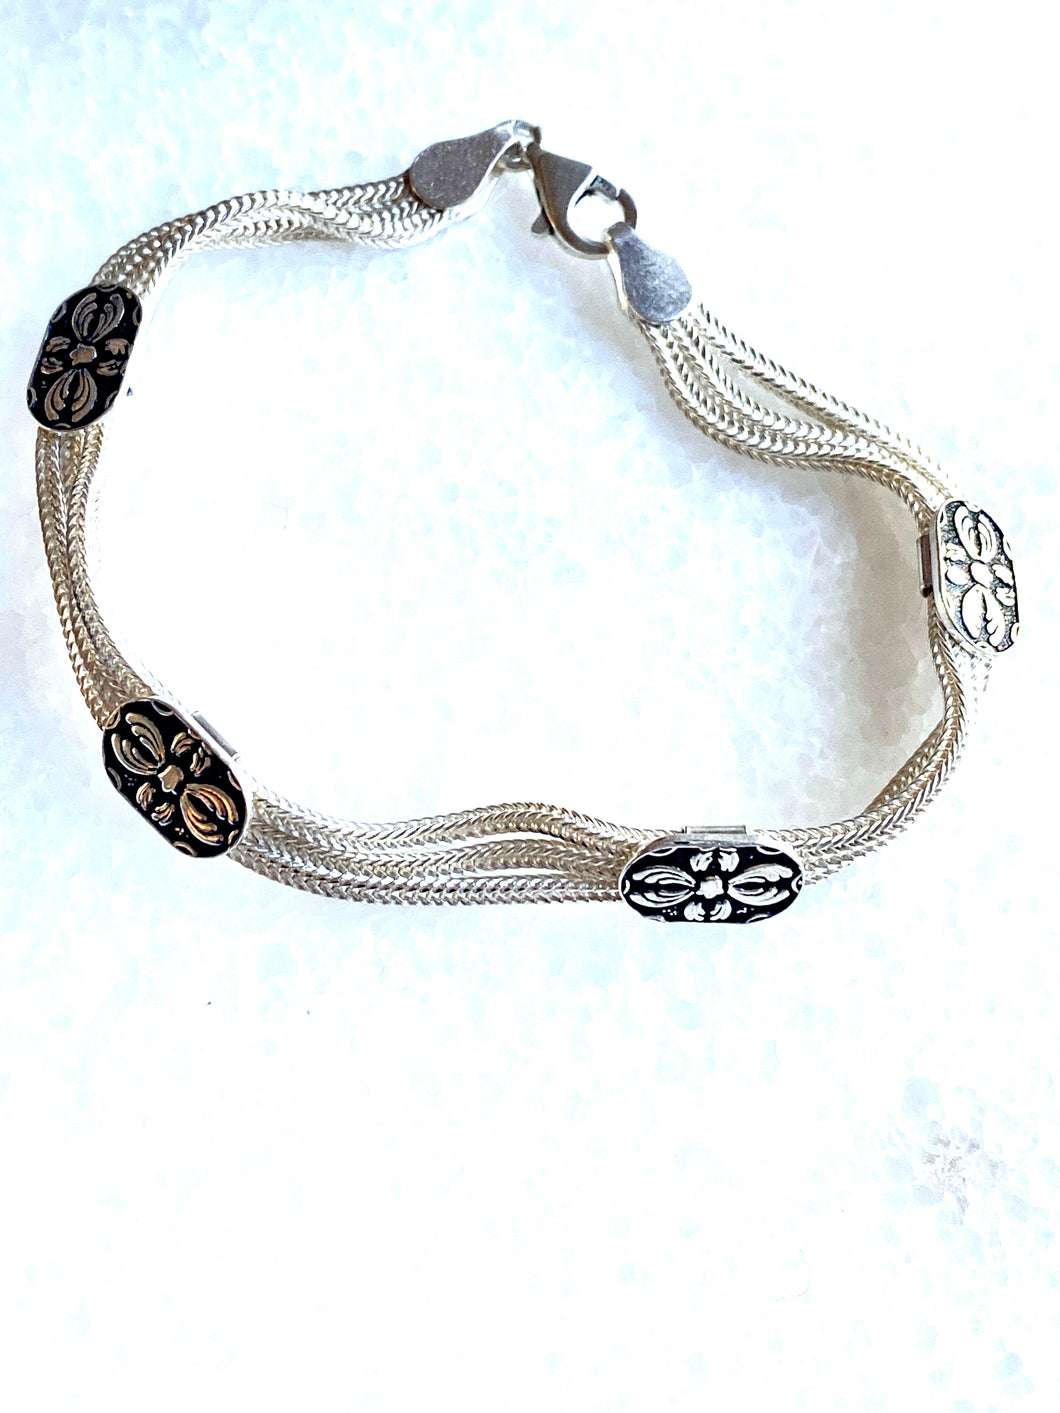 Ancient Roman design bracelet